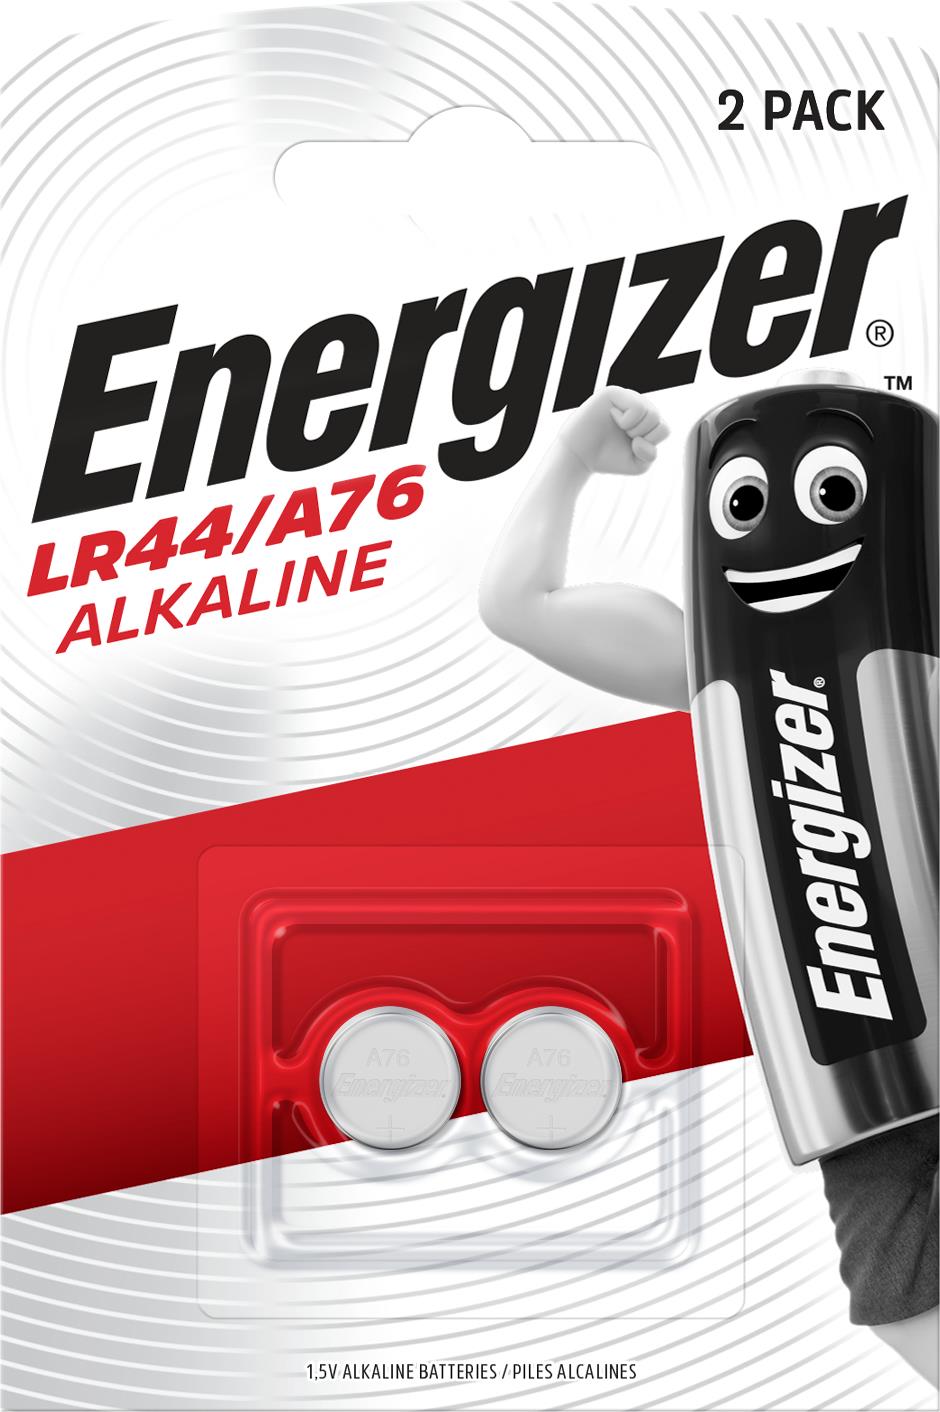 Energizer Lr44/a76 Batteria A